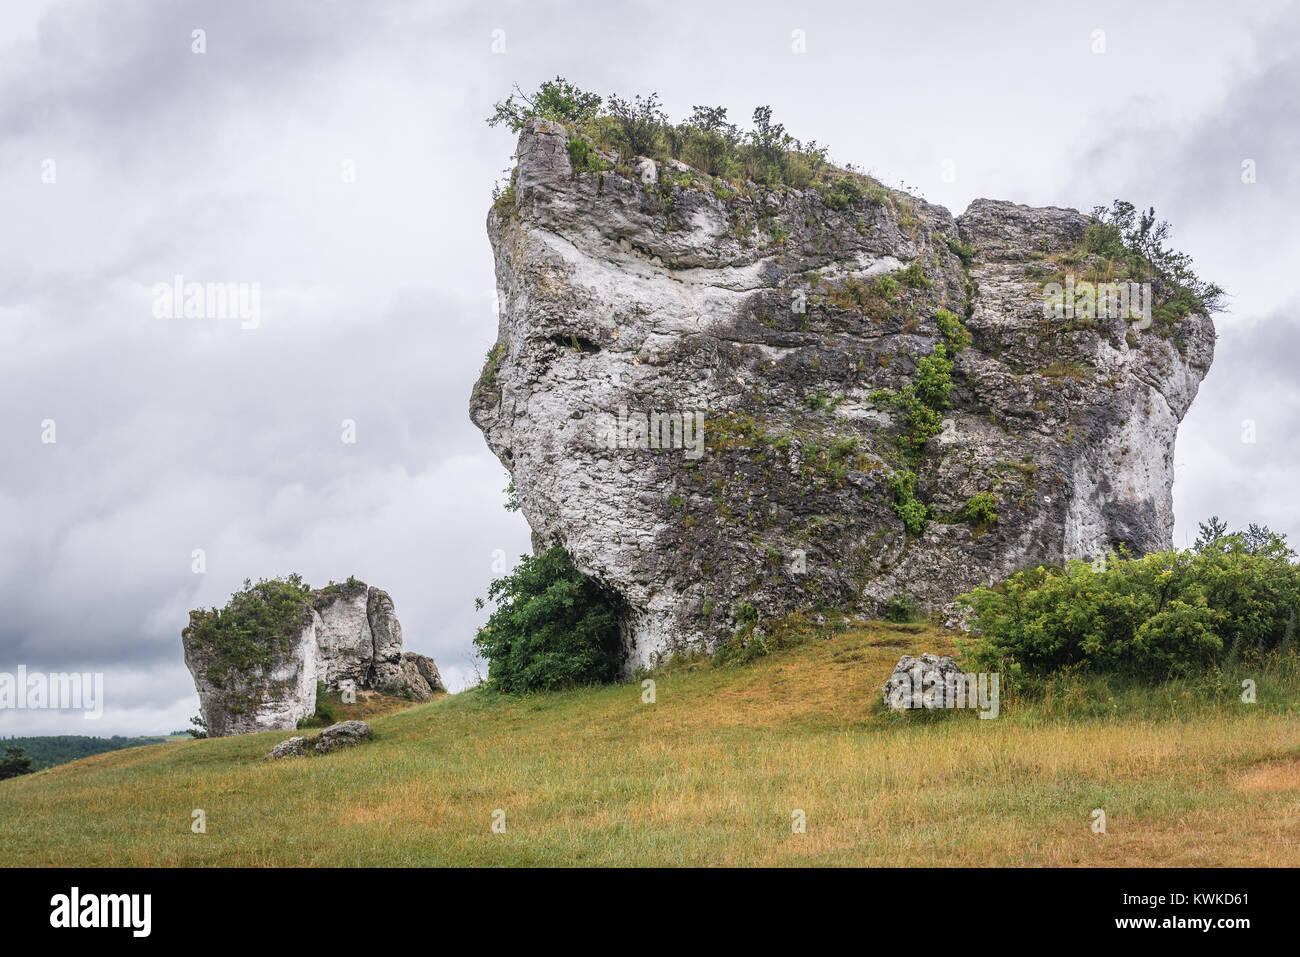 Grand rock aberrantes à côté de château à Mirow village, Jura polonais dans la région du sud de la voïvodie de Silésie en Pologne Banque D'Images